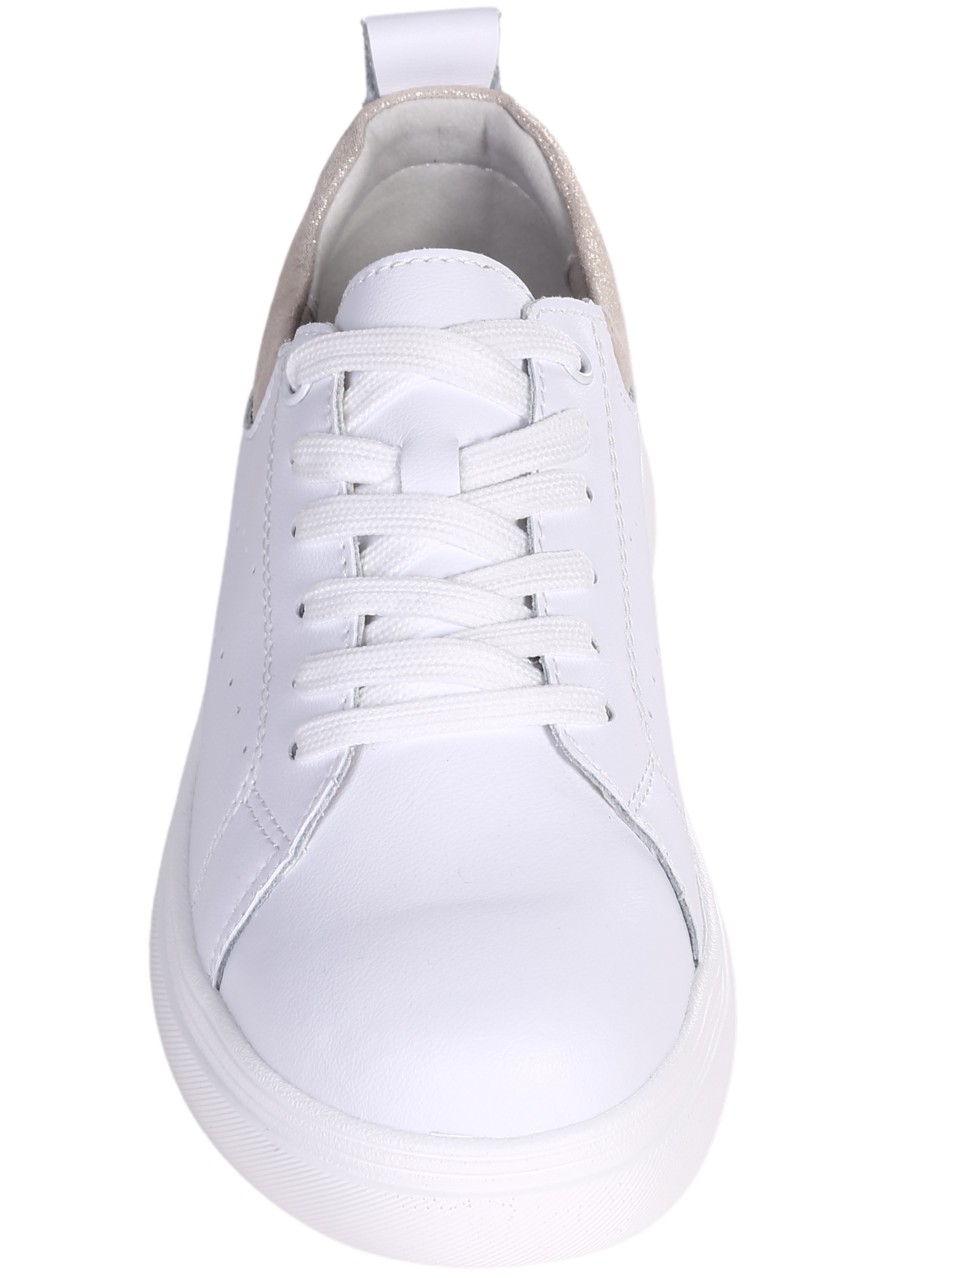 Ежедневни дамски обувки от естествена кожа в бял/златист цвят 3AF-24070 white/lt.gold